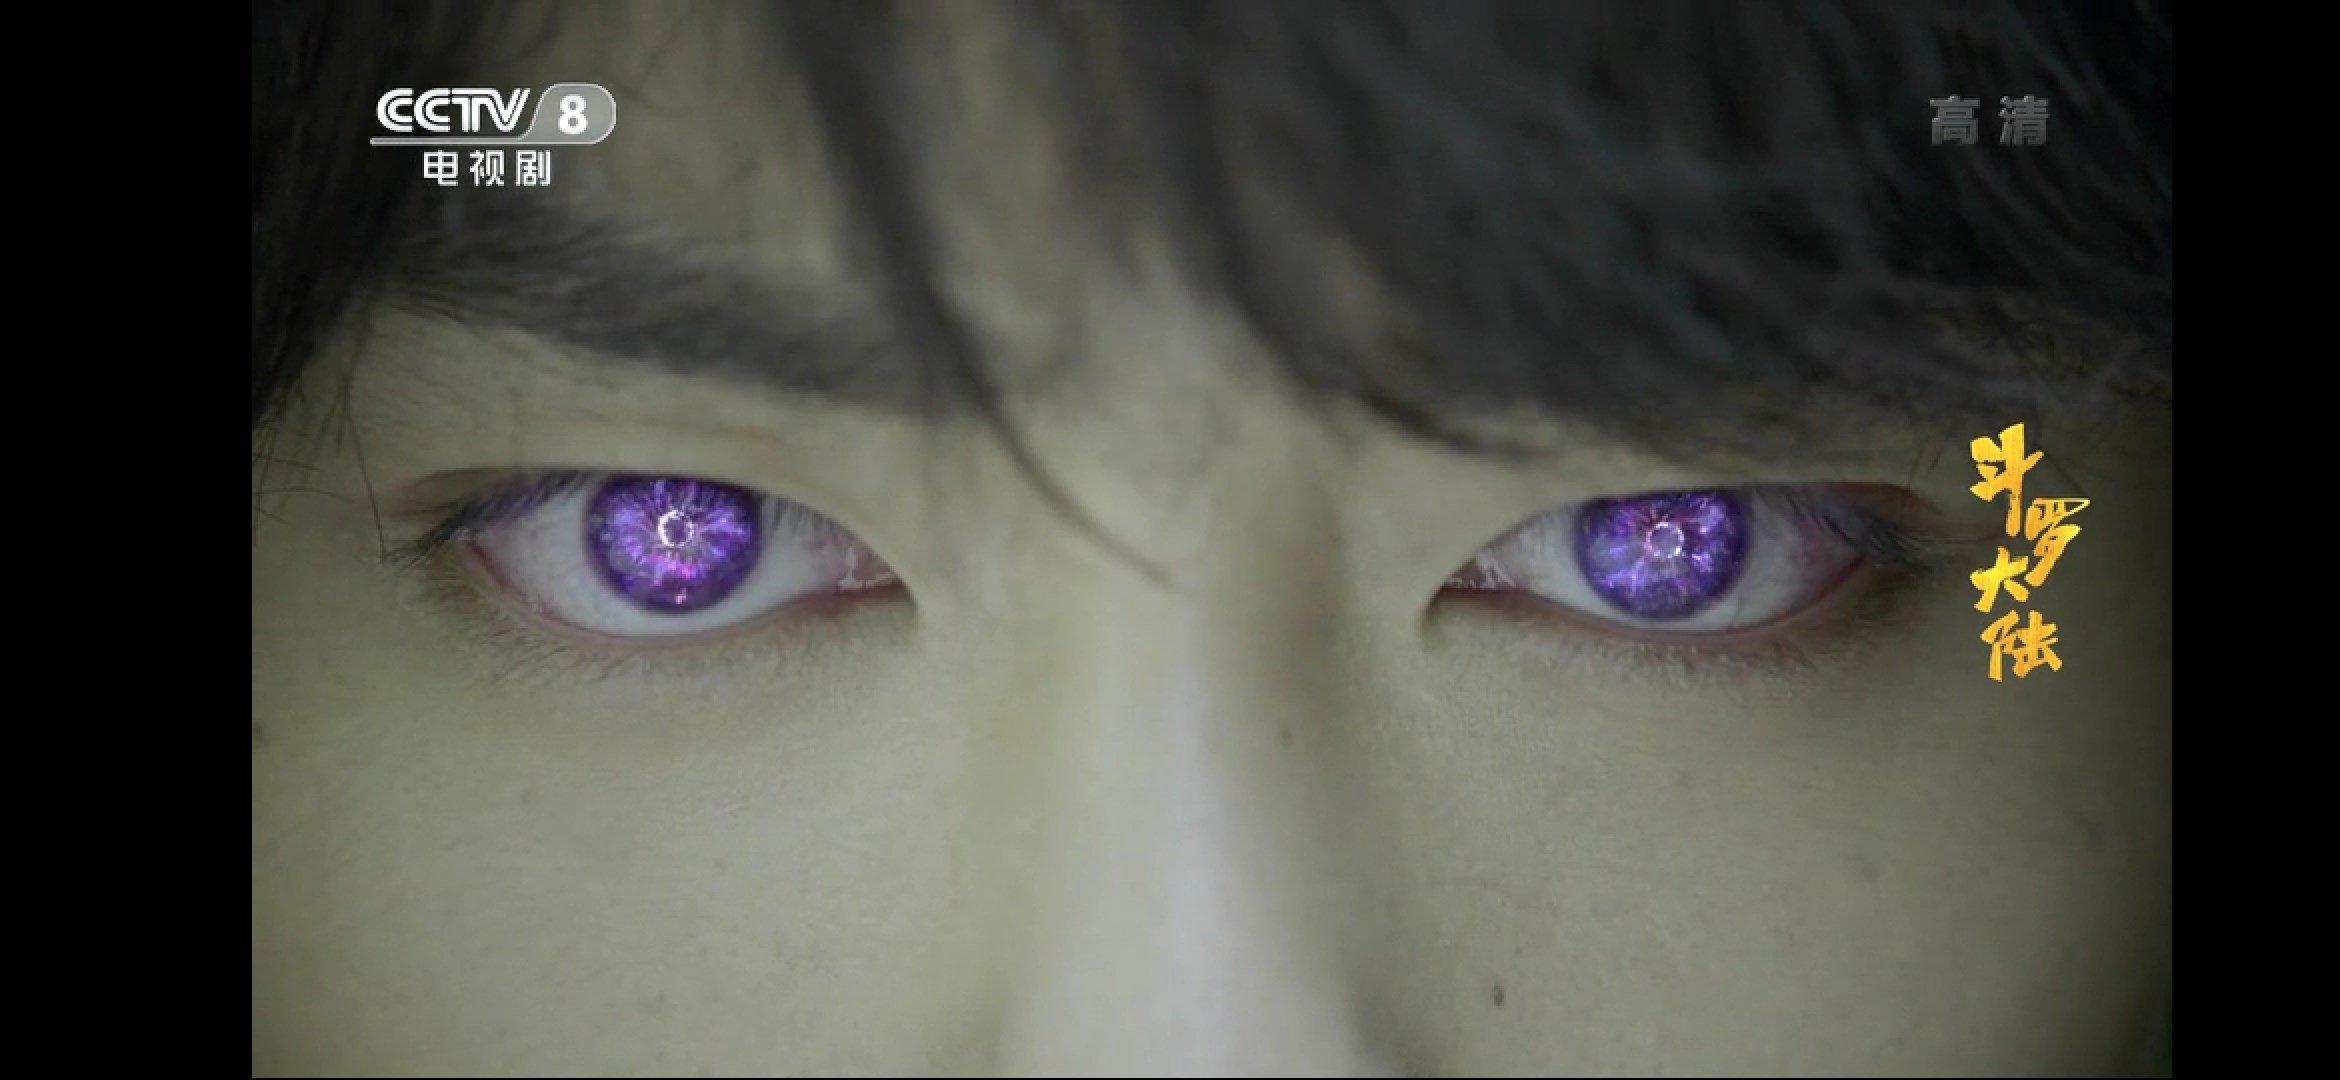 Ánh mắt cực ngầu của nam chính (ảnh: internet)